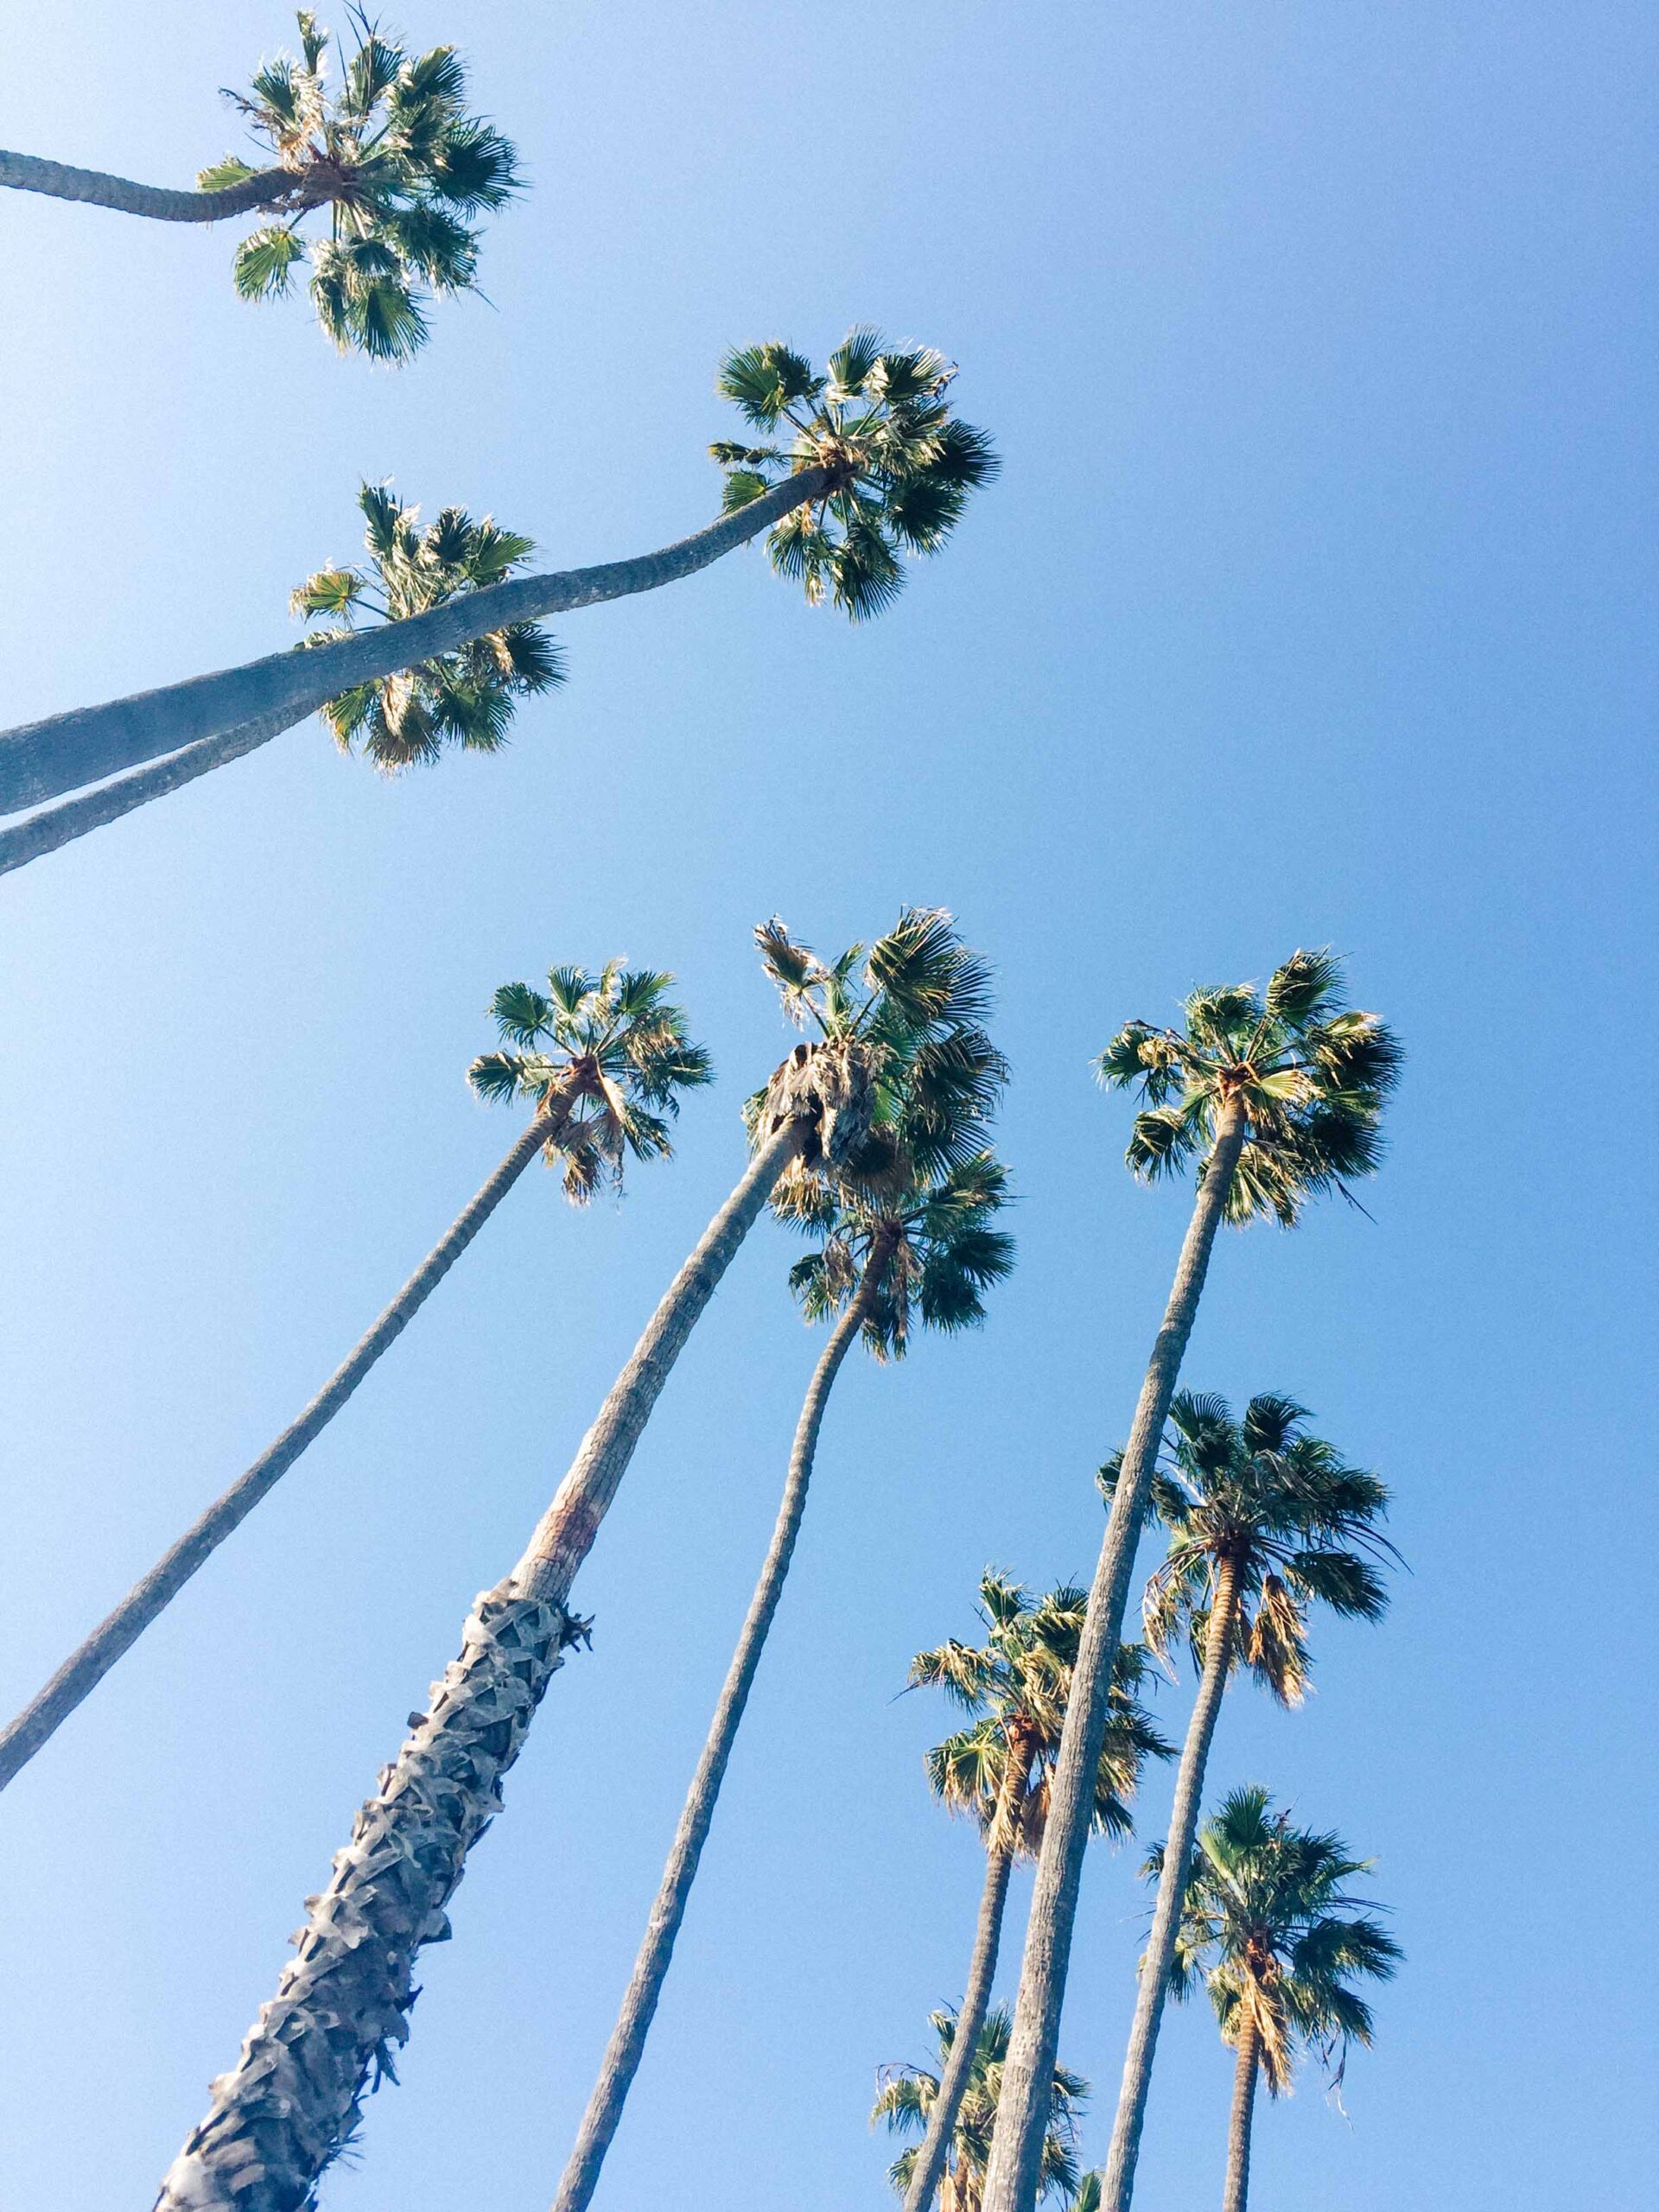 Santa Barbara Palm Trees and Blue Sky | Carla Gabriel Garcia